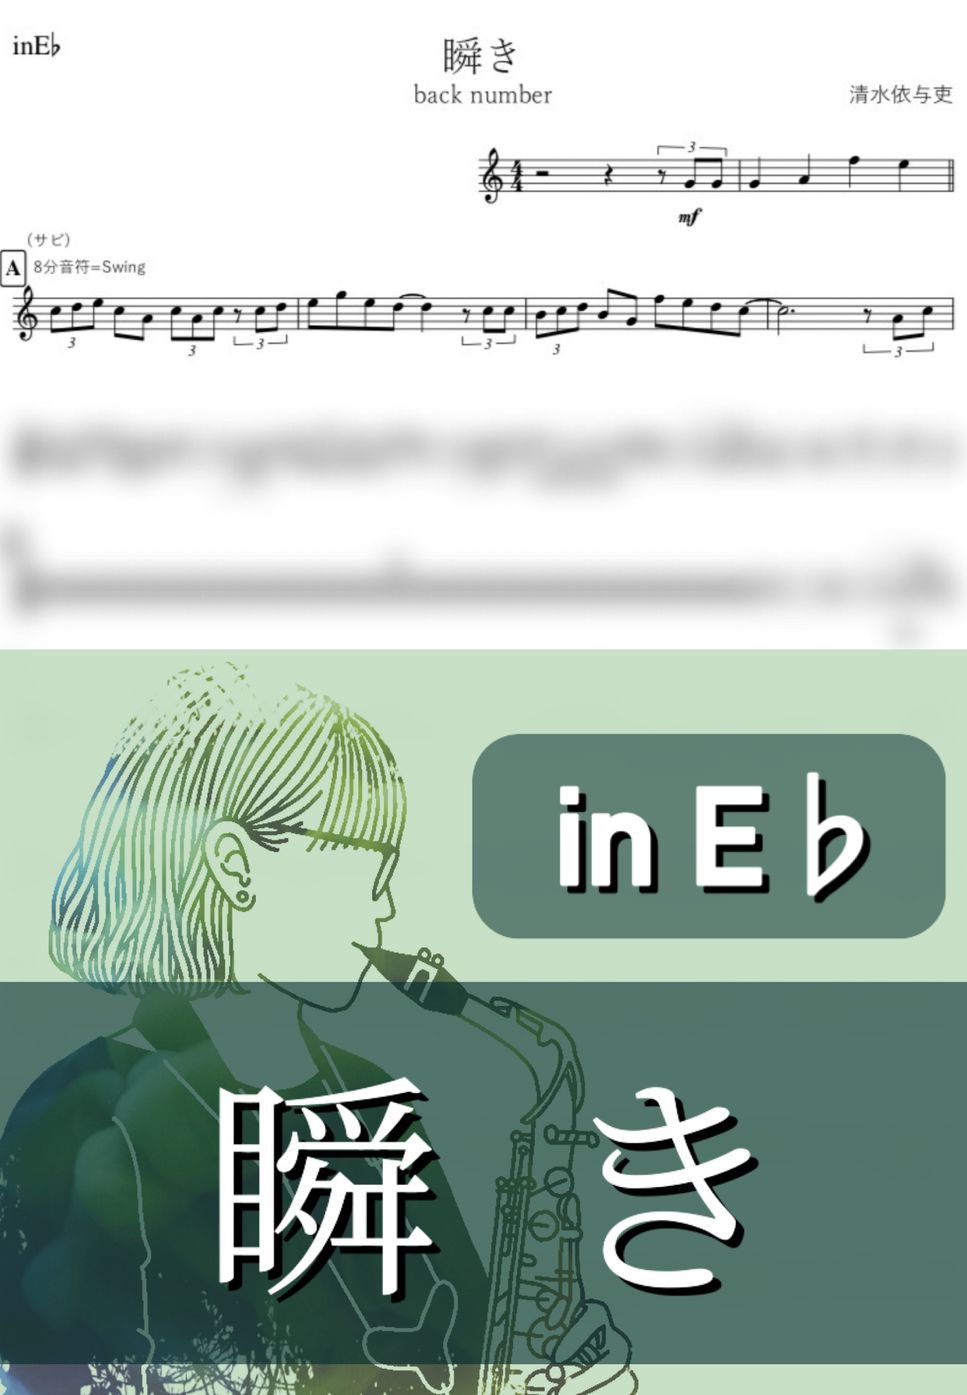 back number - 瞬き (E♭) by kanamusic